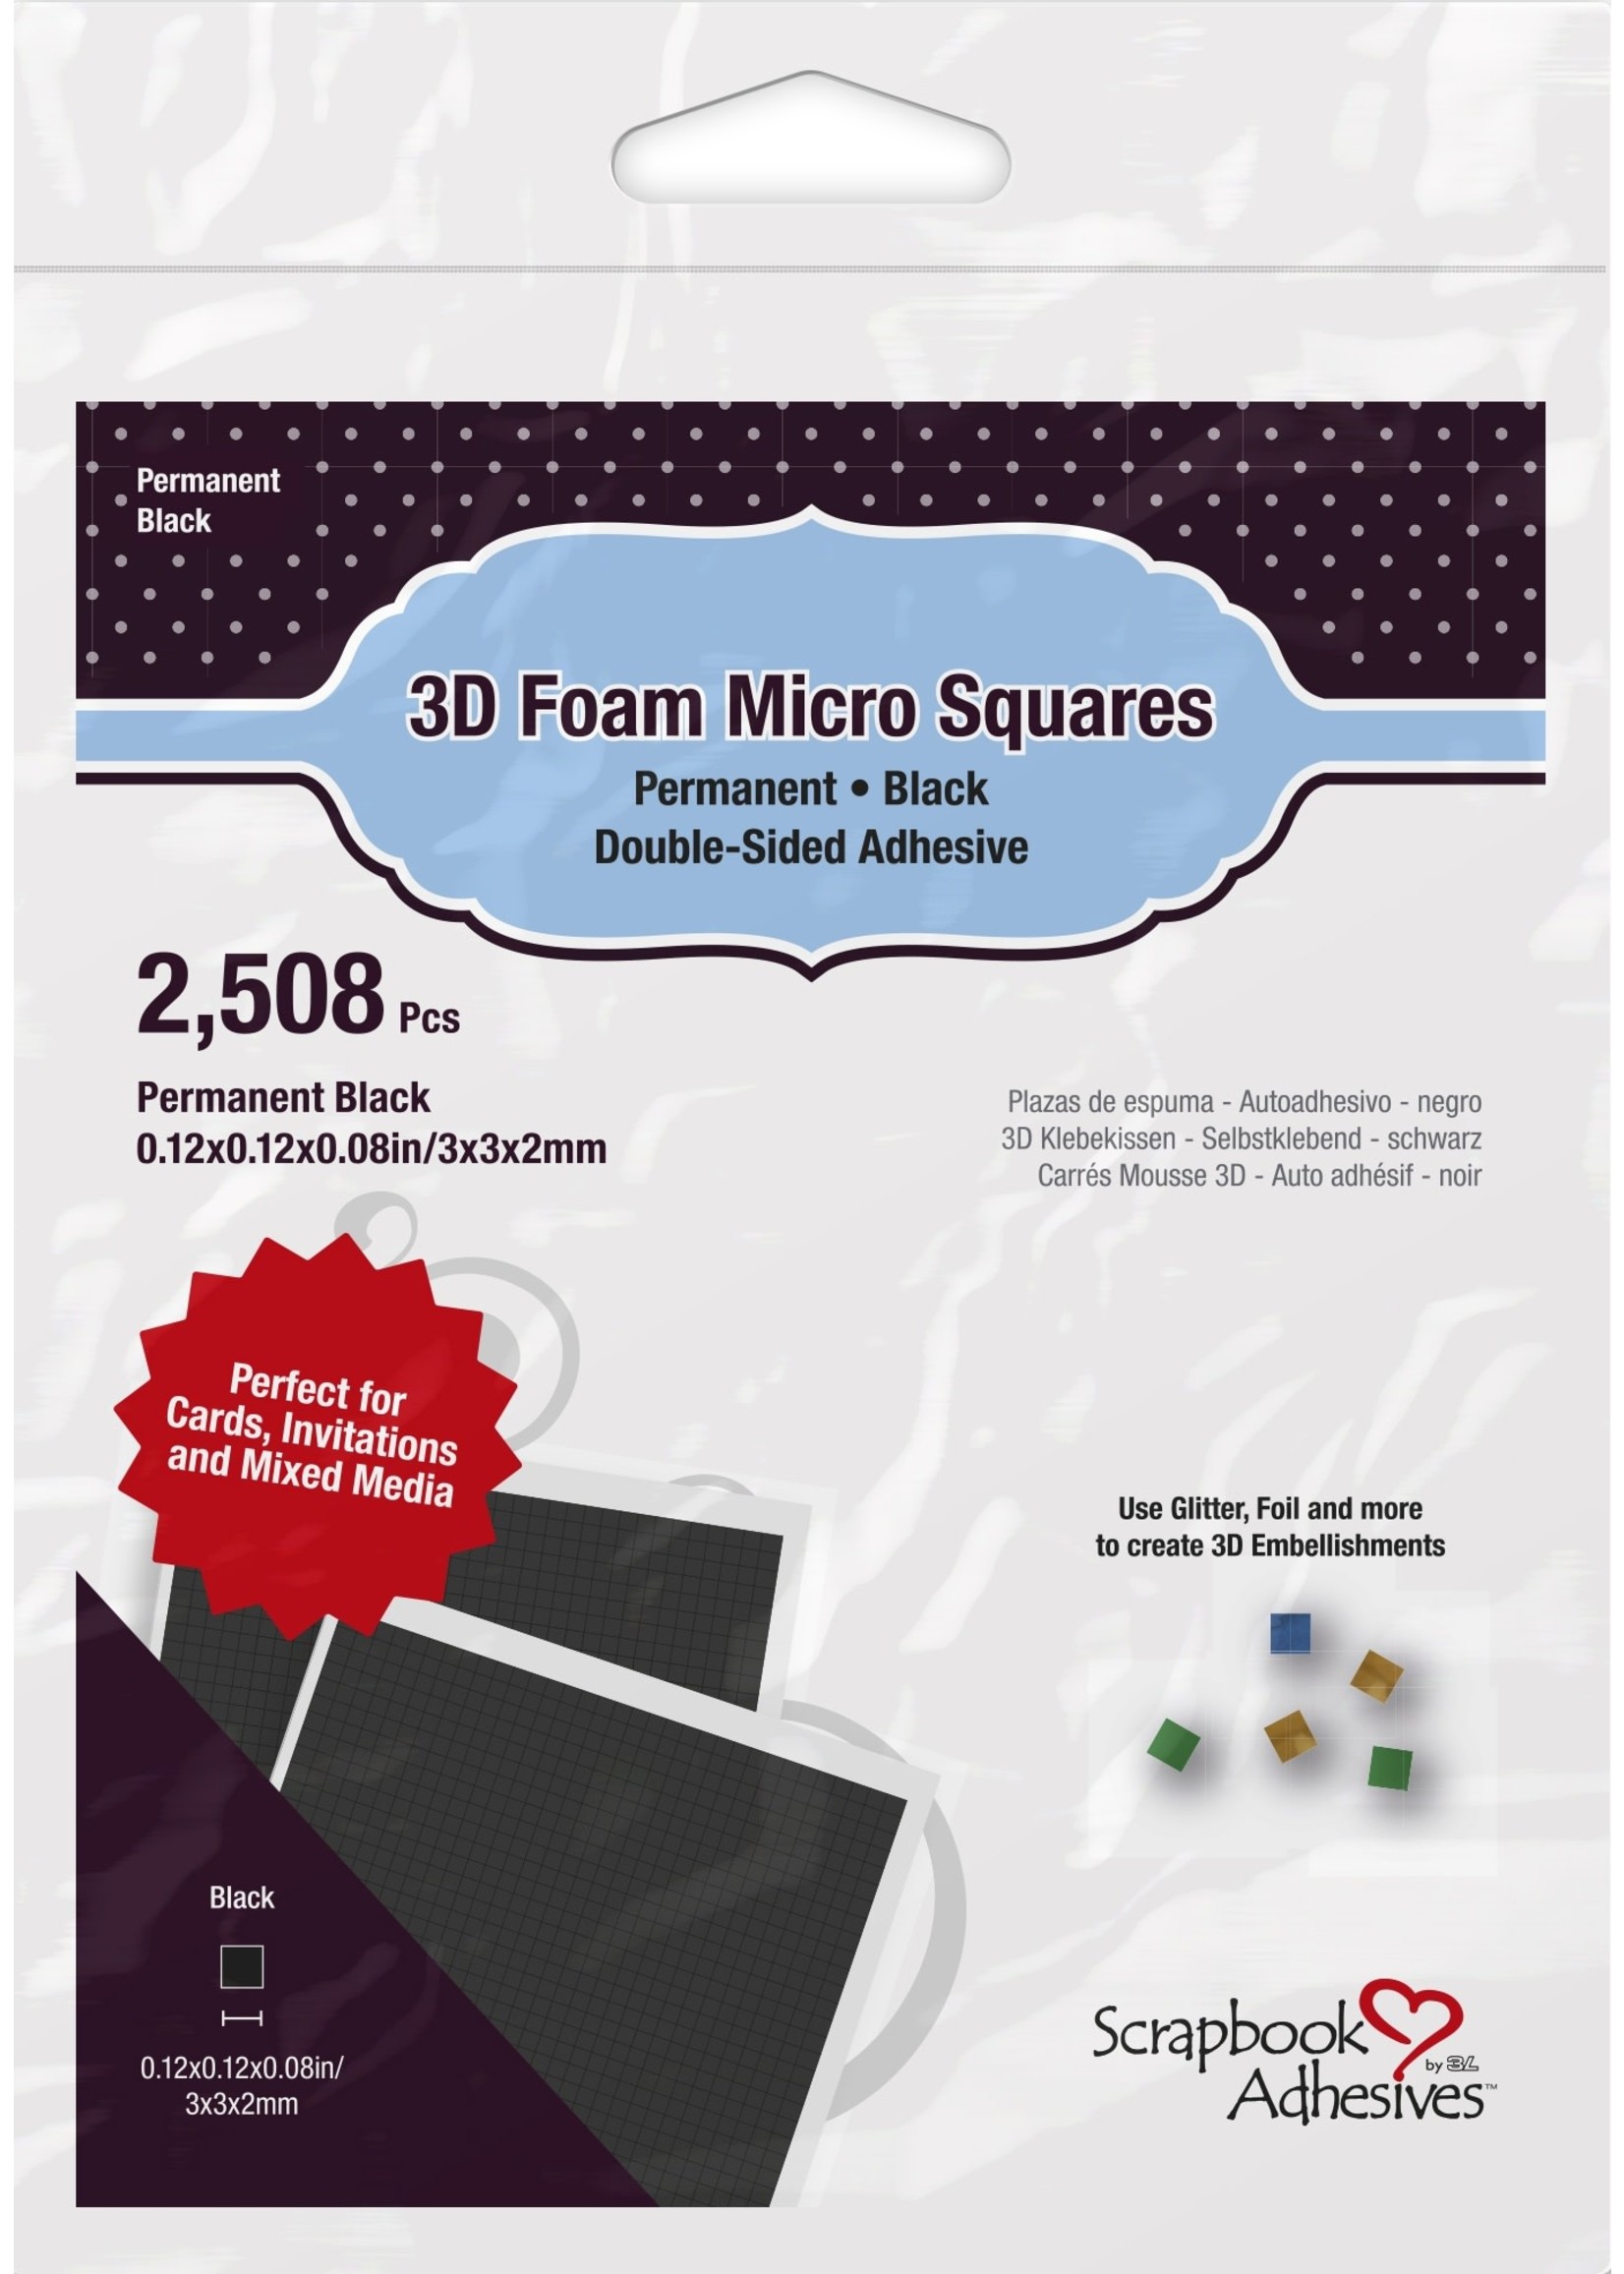 Scrapbook Adhesive Scrapbook Adhesives 3D Foam Micro Squares Black